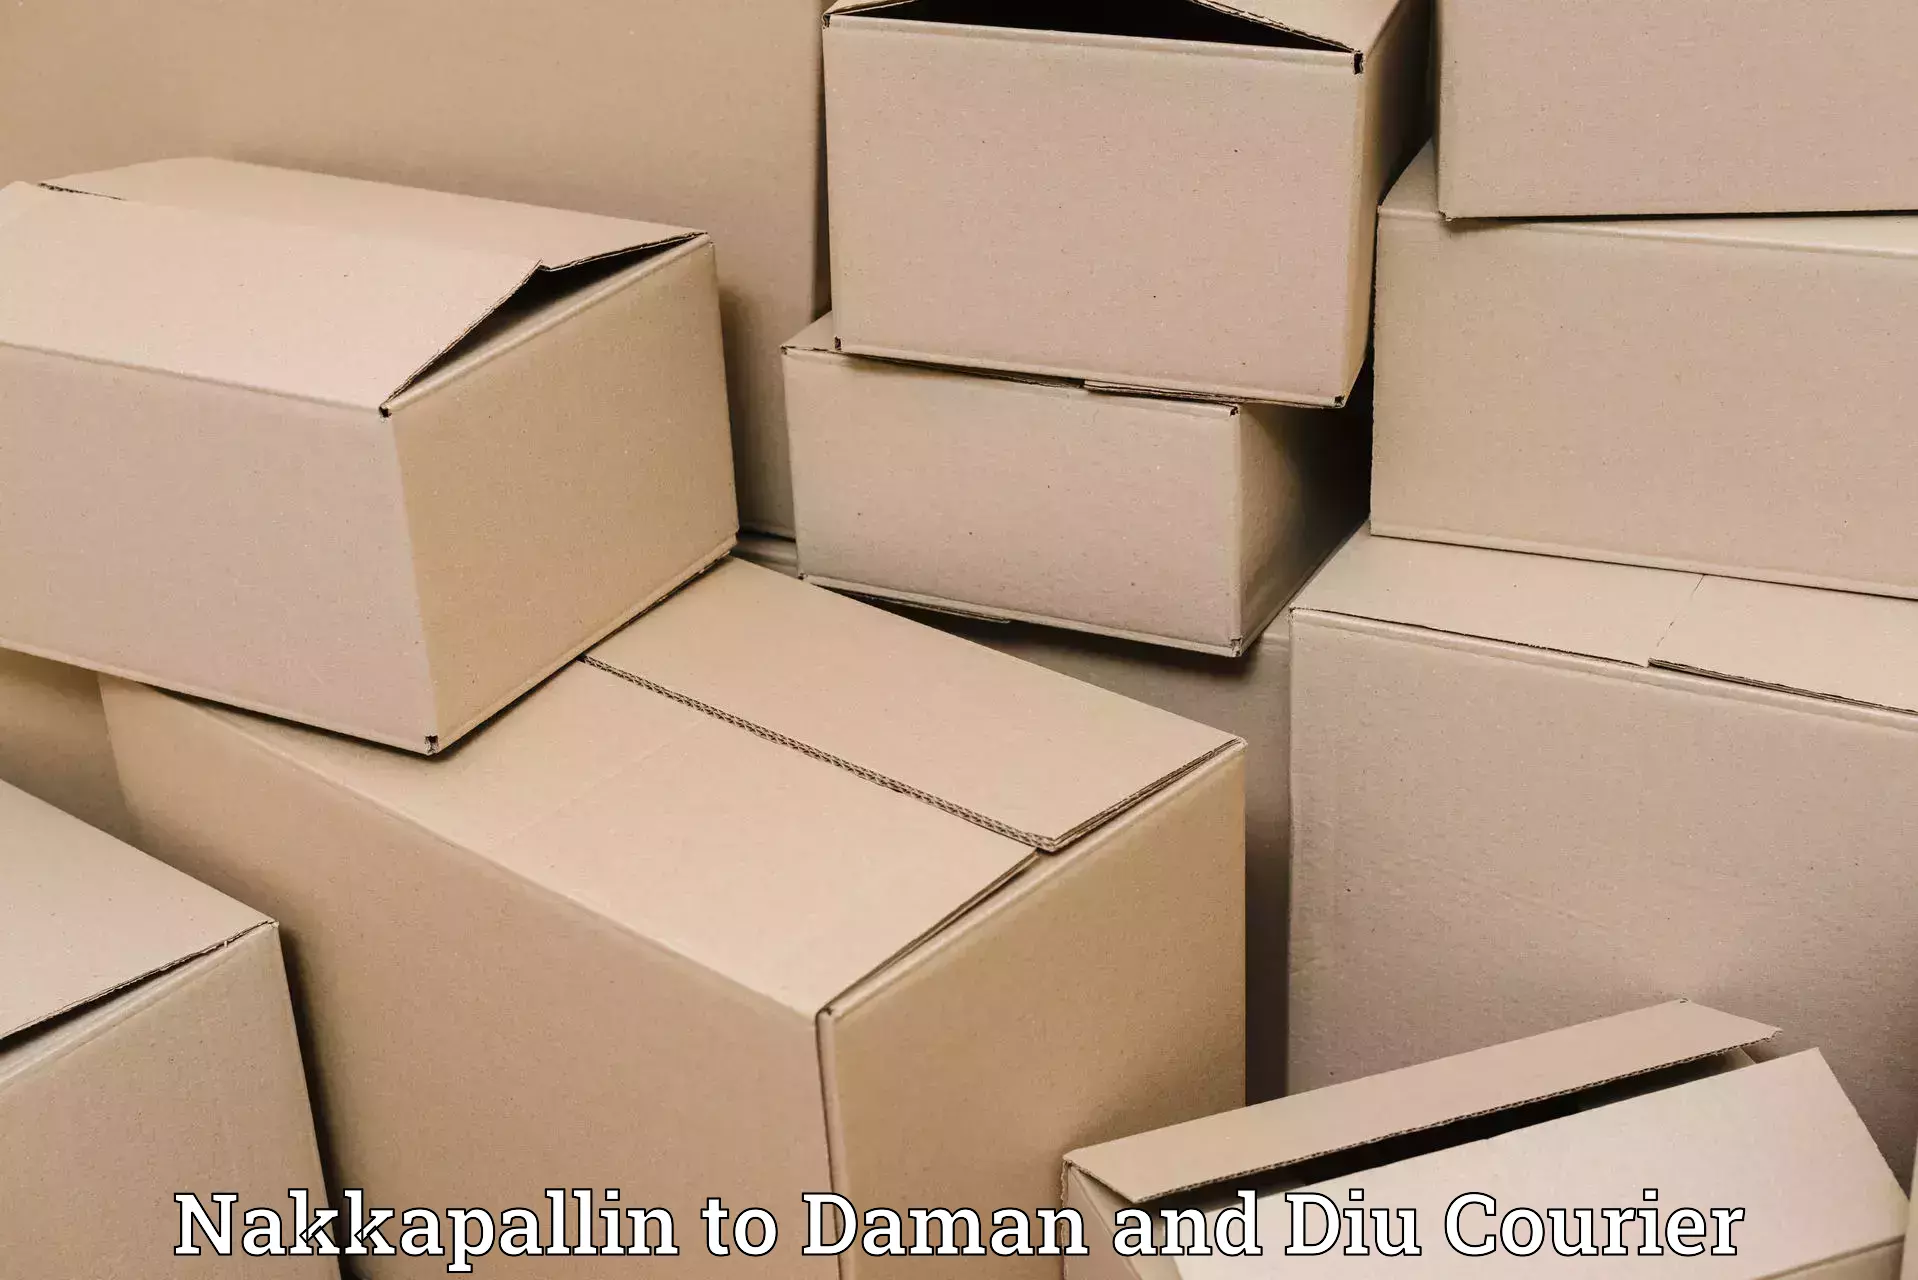 Express mail service Nakkapallin to Daman and Diu